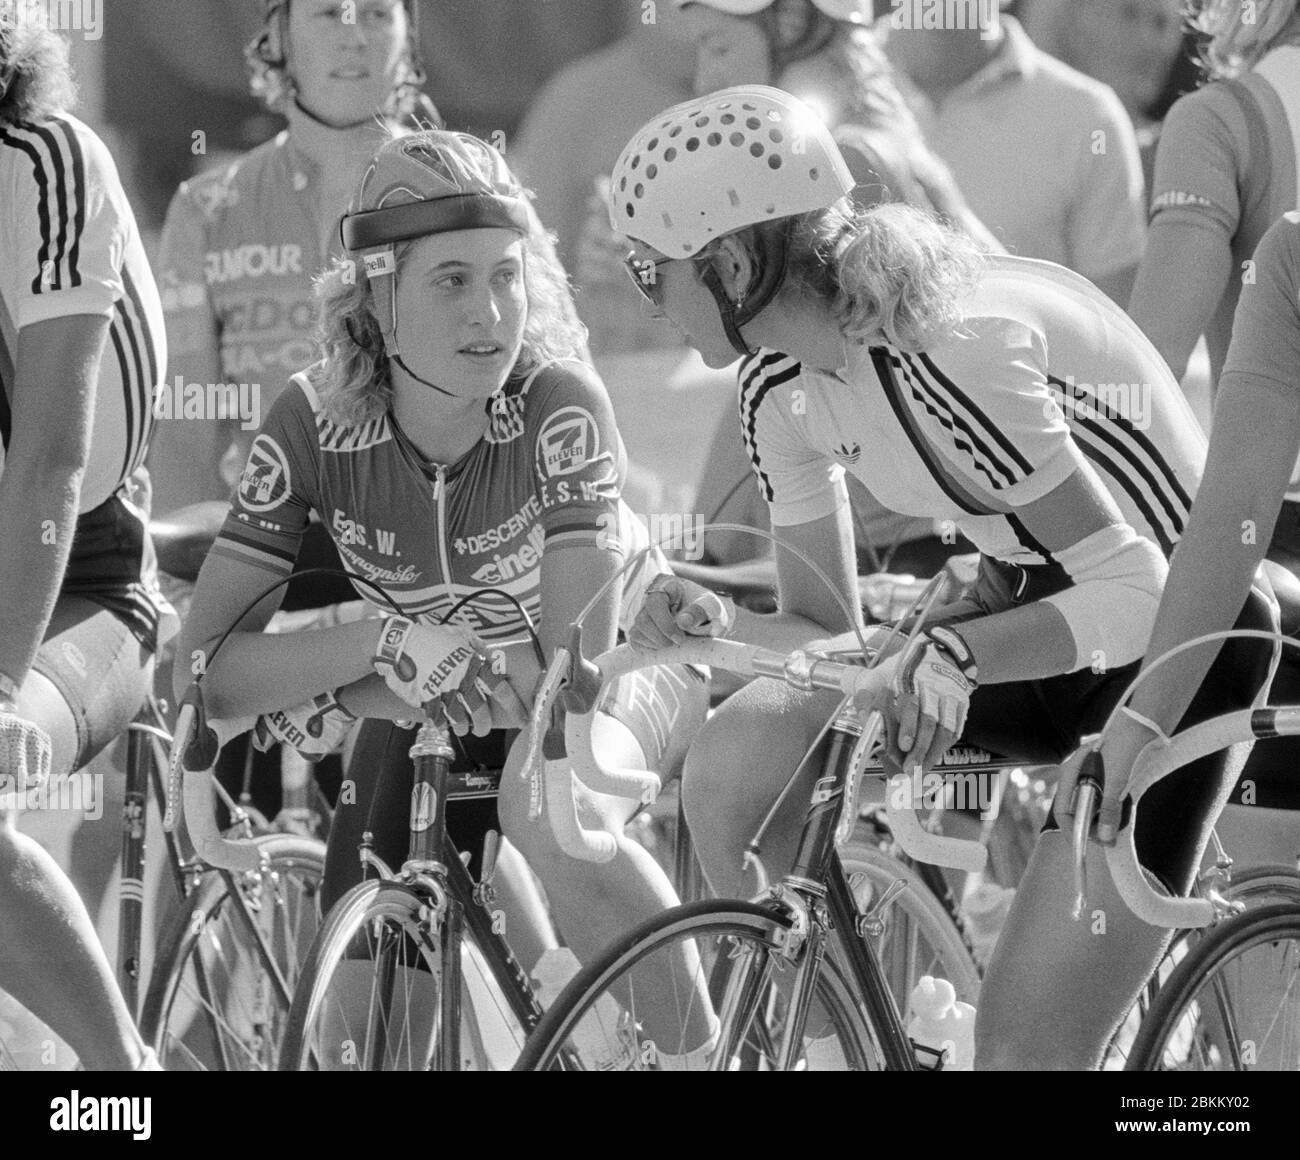 Die amerikanische Radfahrerin Rebecca Twigg, Mitglied des Damen-Radteams 7-11, links und die Deutsche Sandra Schumacher am Start, bevor am 15. August 1985 das Coors International Bicycle Classic Radrennen in Grand Junction, CO. Gestartet wurde. Foto: Francis Specker Stockfoto